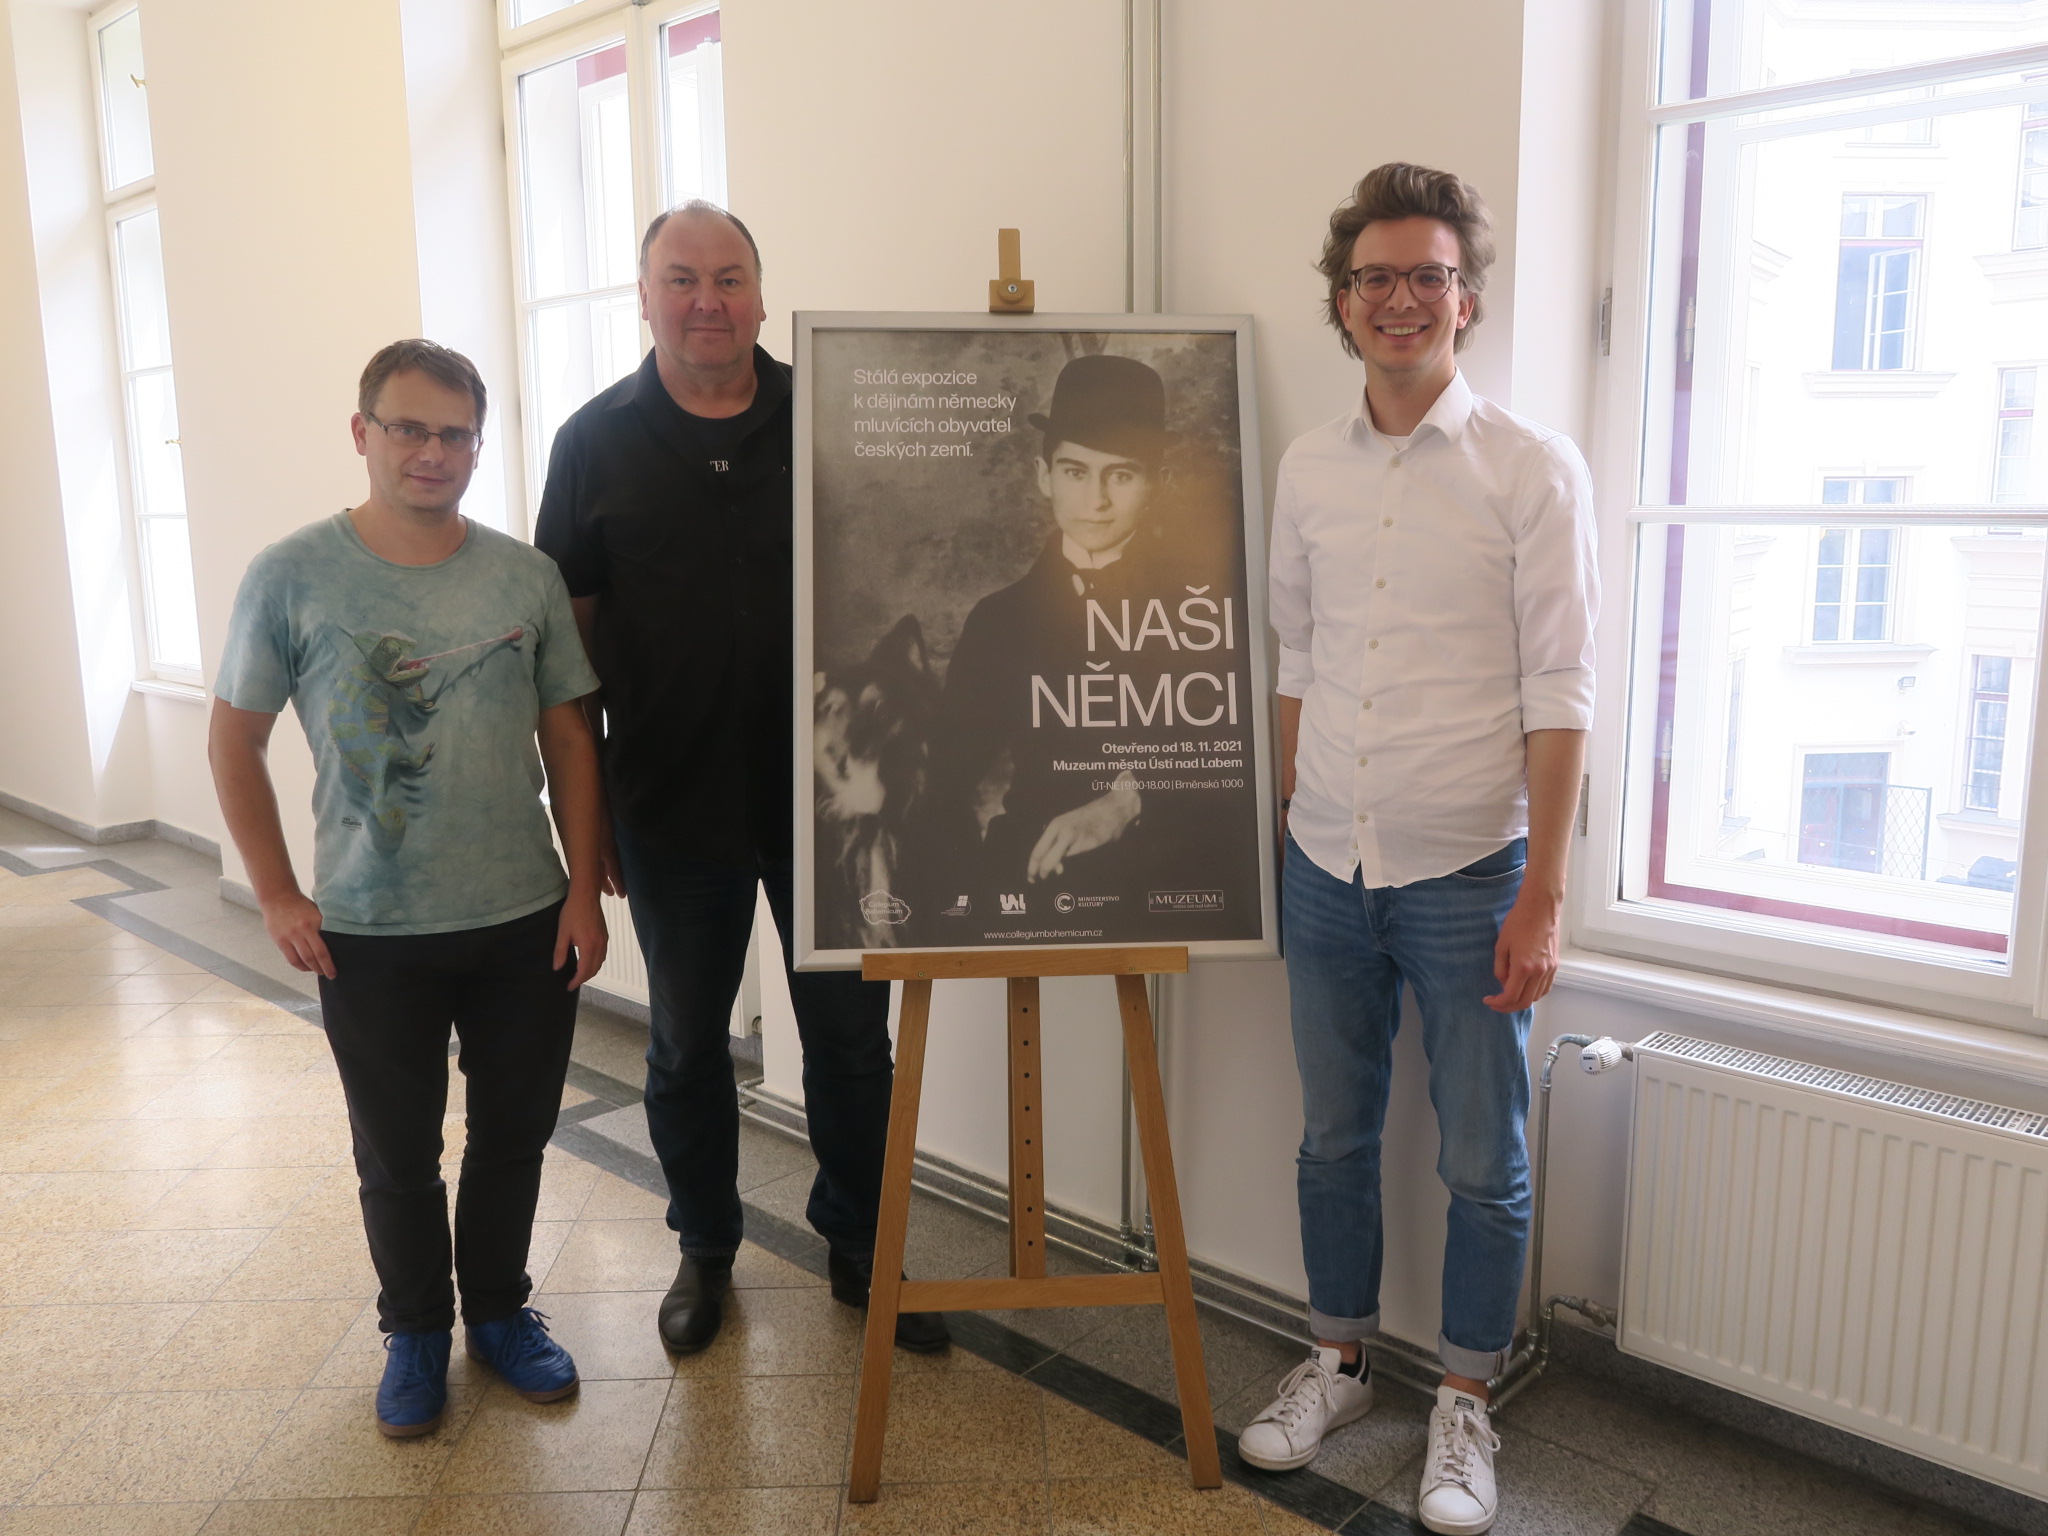 In der Mitte steht ein Plakat der Ausstellung in einem Gang. Rechts davon steht Leon Eckert. Links steht Erhard Grundl. Daneben steht die Person, die die Museumsführung gemacht hat.